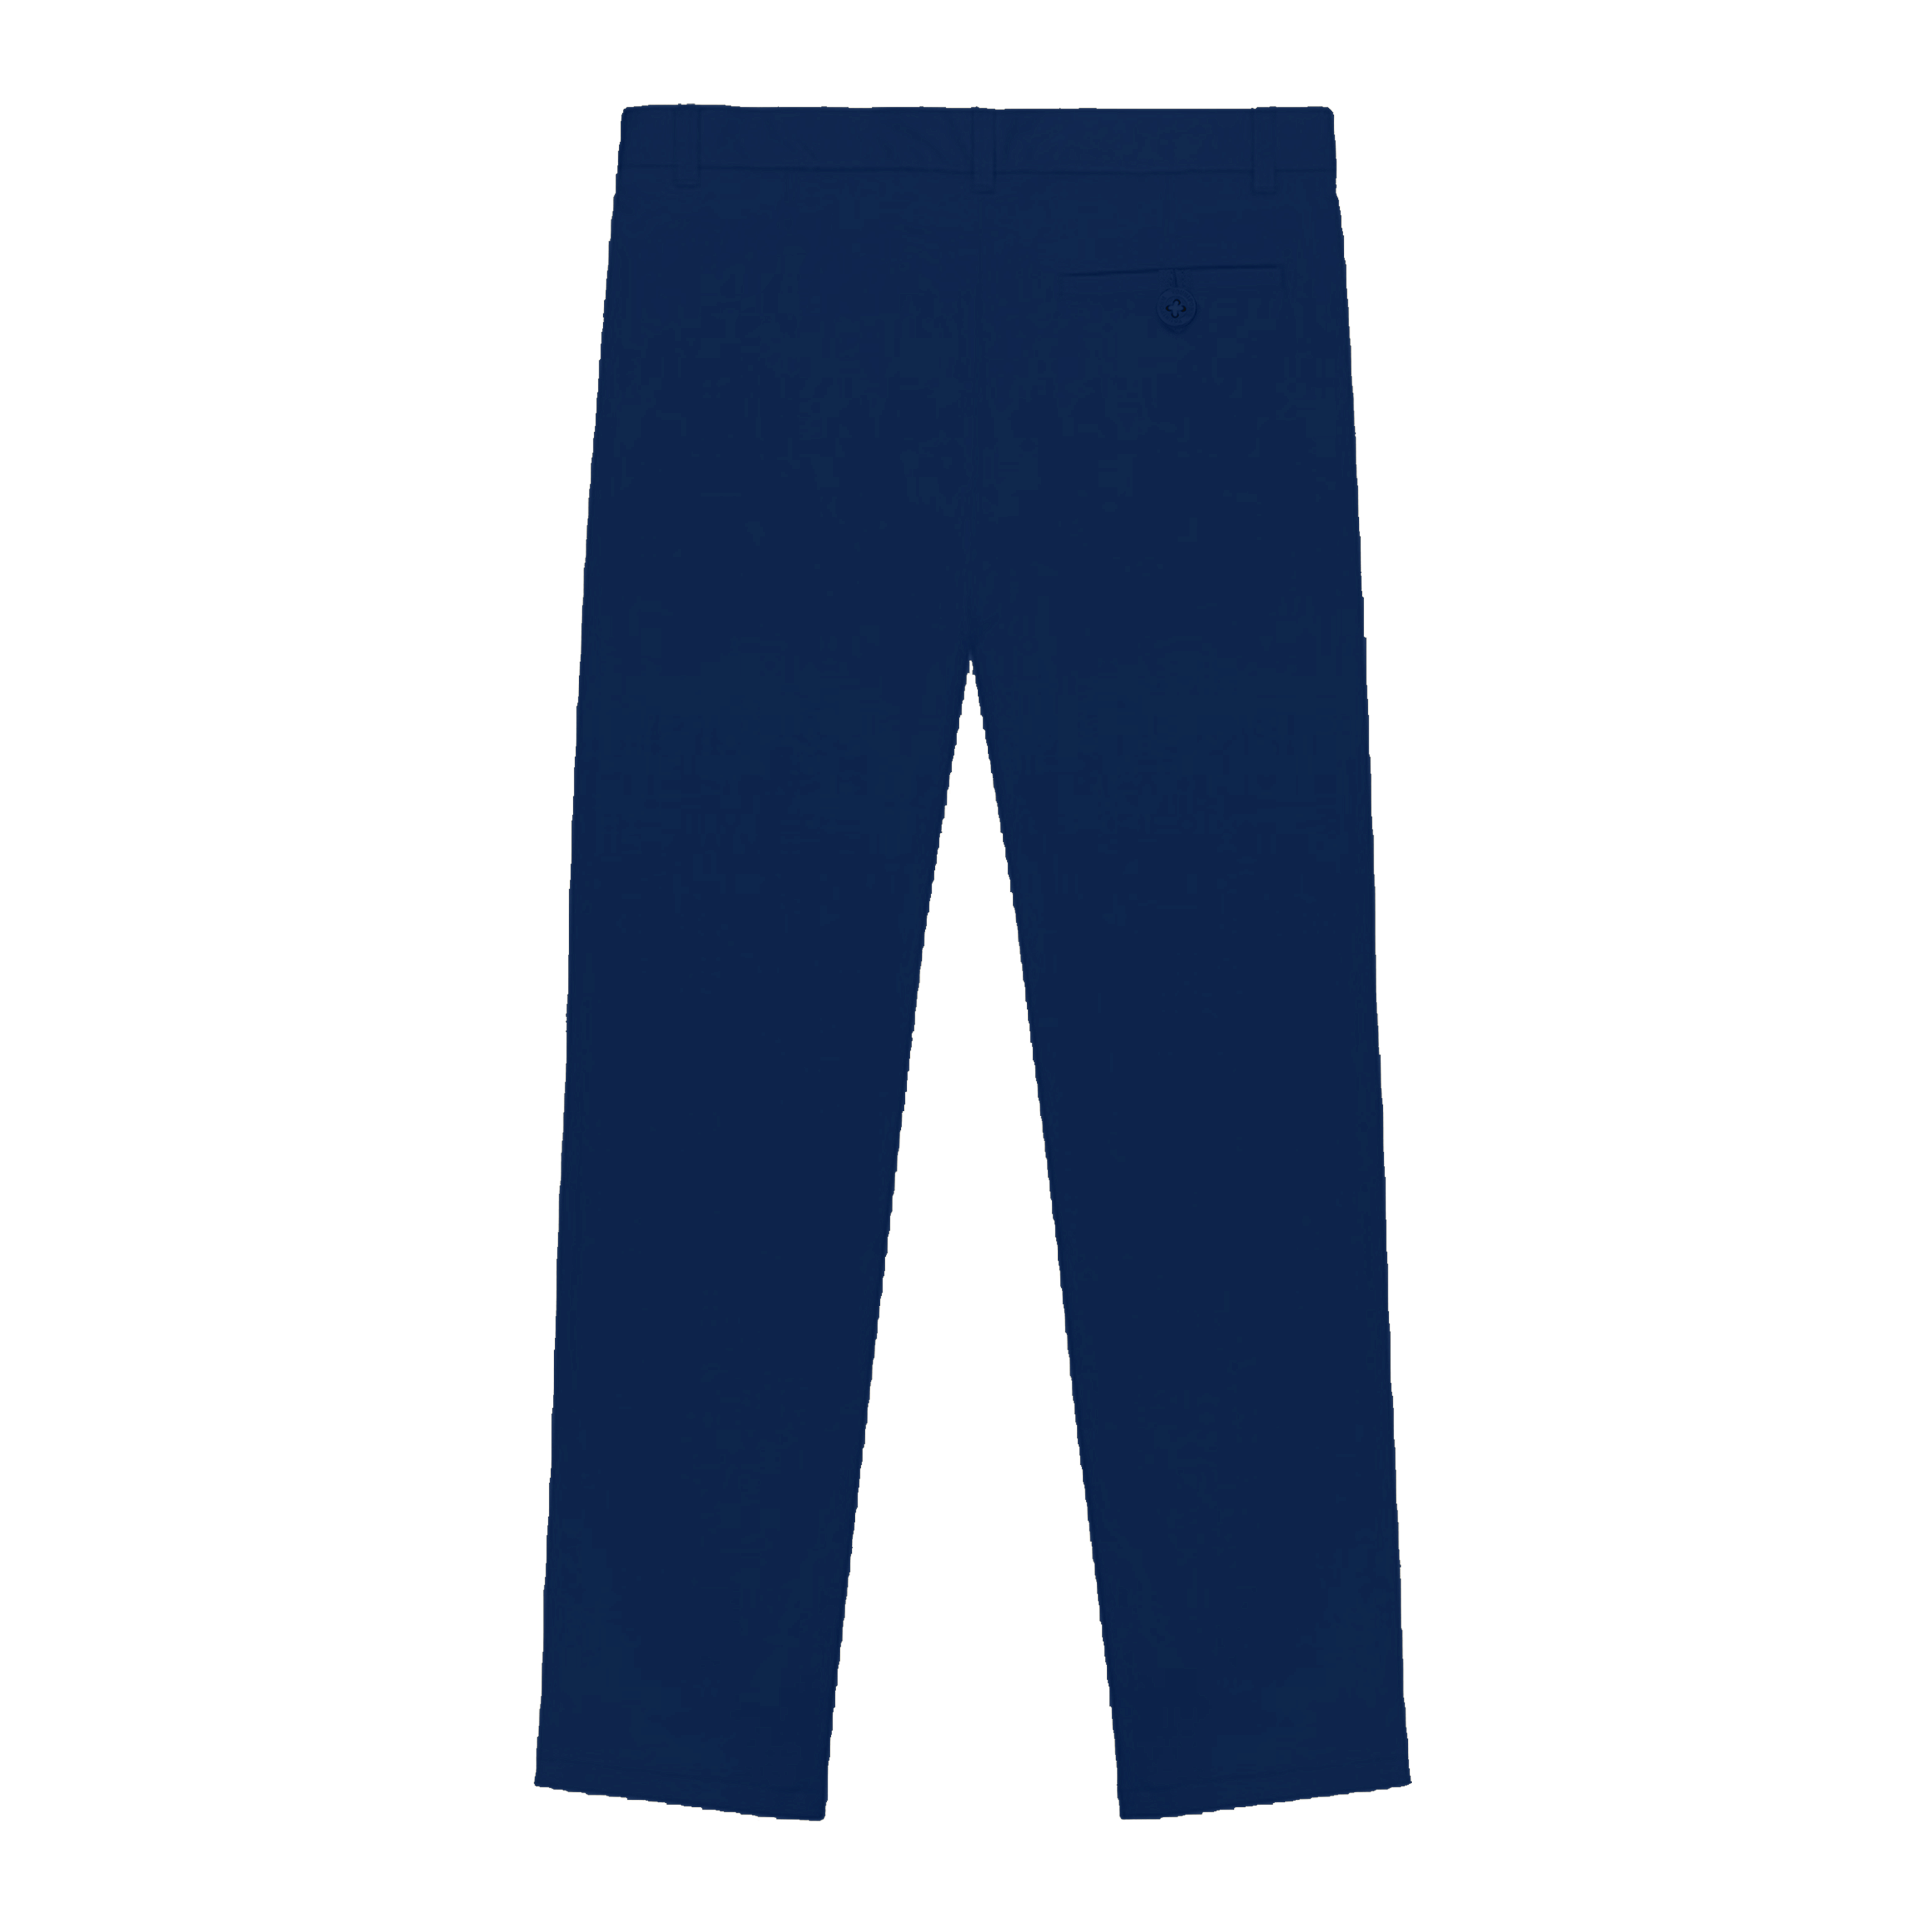 Nixor Fixed Belt Pants - Youniform